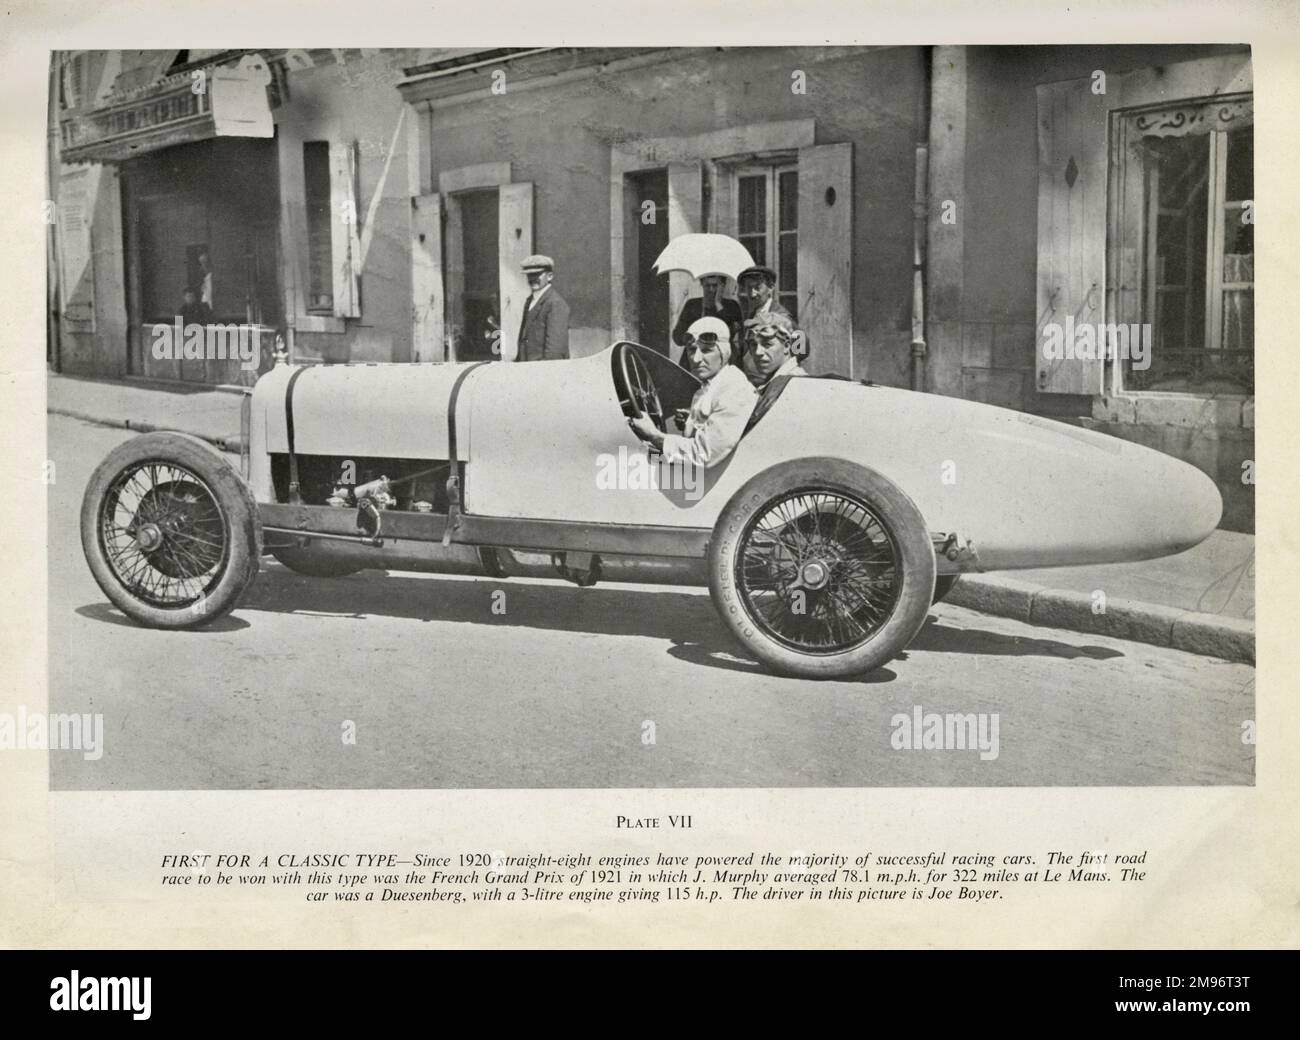 Das erste Straßenrennen, das von einem Motor gewonnen wurde, der von einem geradeaus-Motor angetrieben wurde, war der Grand Prix 1921 in Frankreich, bei dem J Murphy in Le Mans durchschnittlich 78,1 km/h über 322 km/h erreichte. Das Auto war ein Duesenberg mit einem 3-Liter-Motor und einer Leistung von 115 ps. Der Fahrer auf diesem Foto ist Joe Boyer Stockfoto